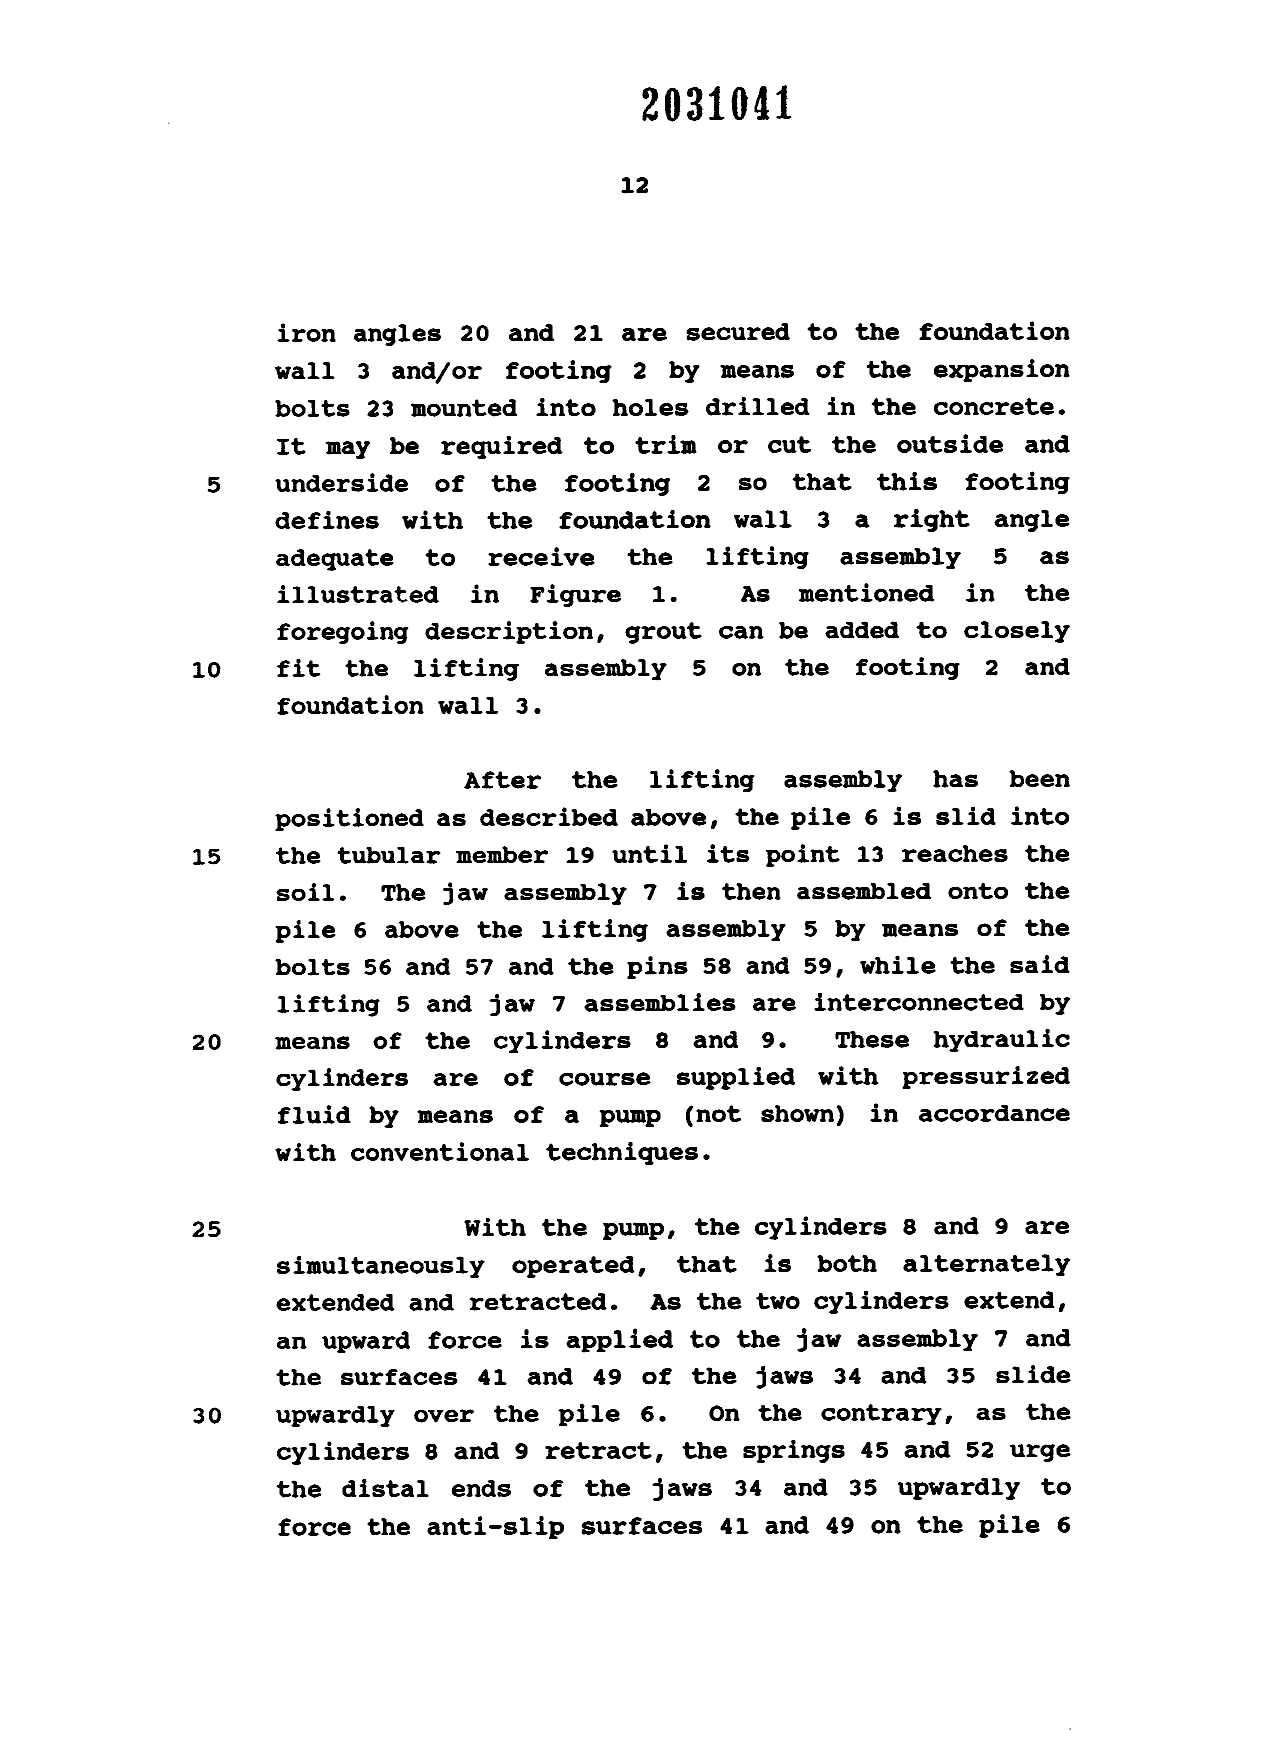 Canadian Patent Document 2031041. Description 19951216. Image 13 of 15